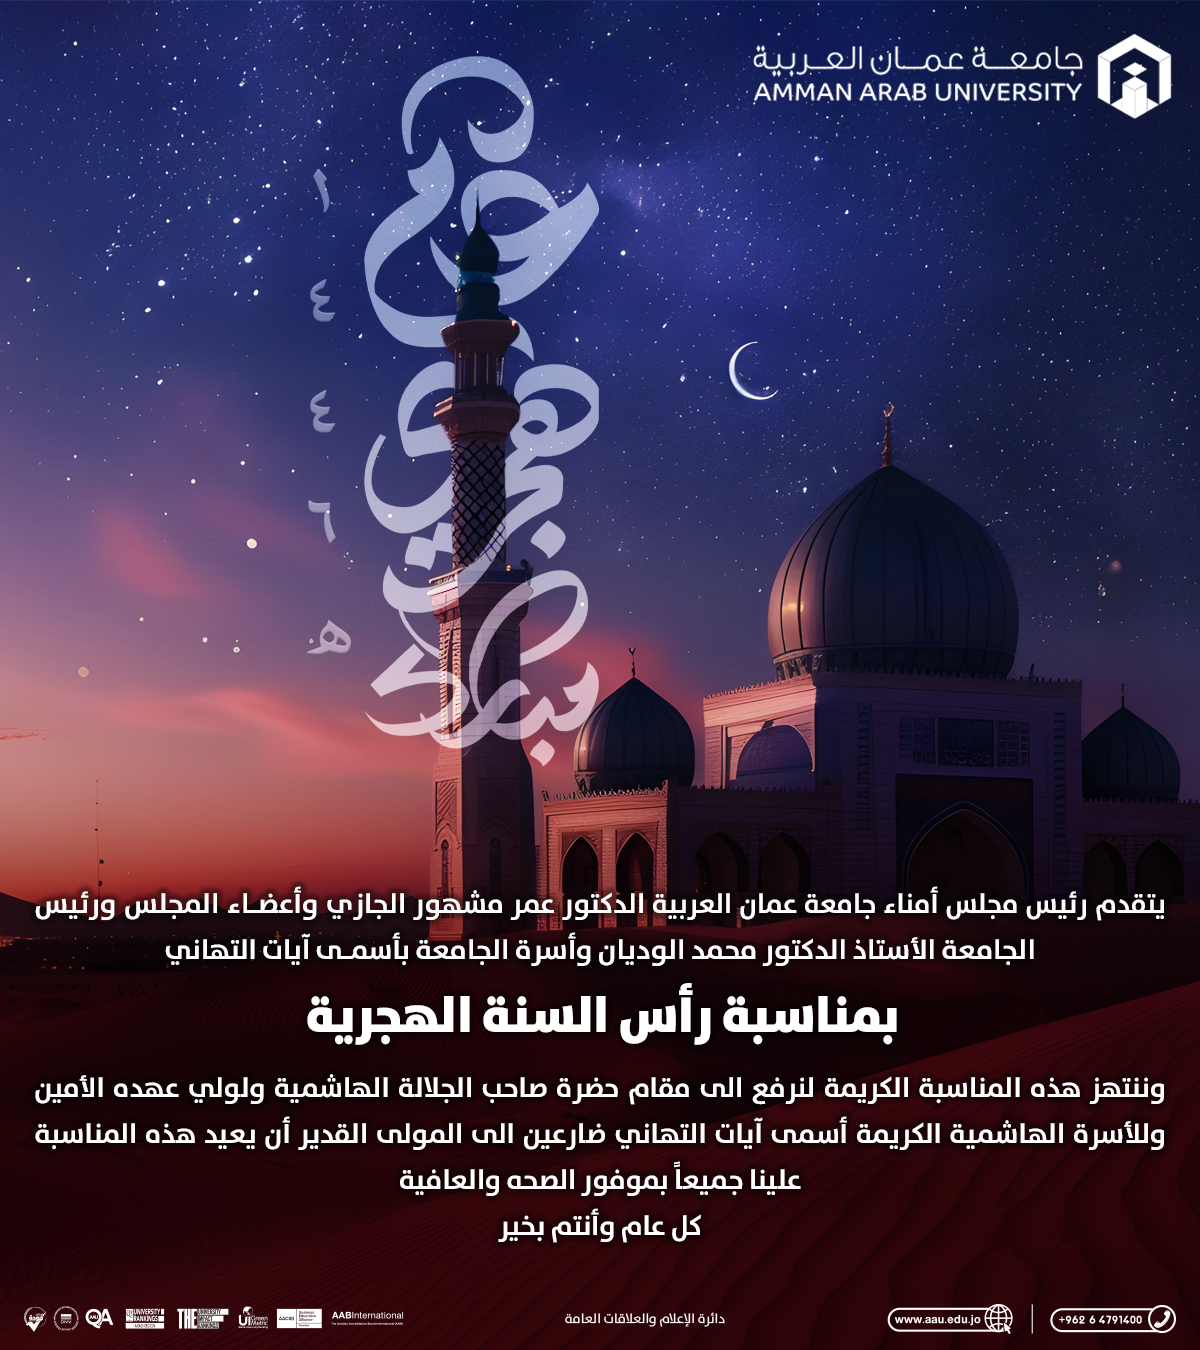 جامعة عمان العربية تهنئ بمناسبة رأس السنة الهجرية 1446 